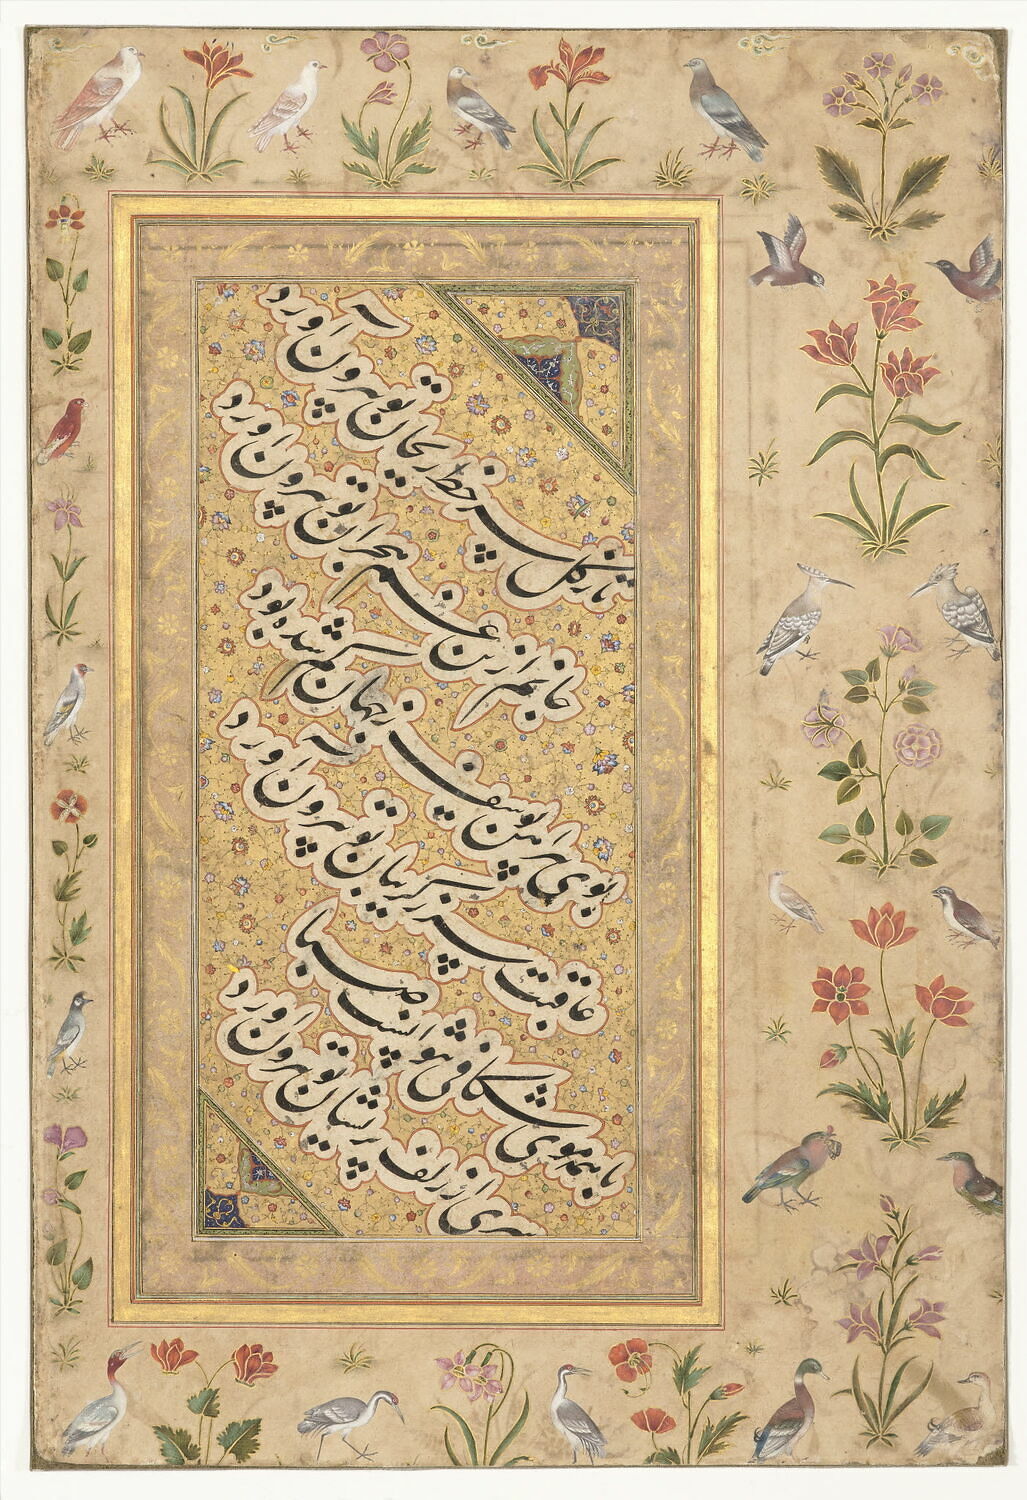 Calligraphie (page d'album) 1536 / 1650 (XVIe siècle) Mir Ali Haravi Lieu de provenance : Inde (Sous-continent indien) (marge) ; Iran (Monde iranien - Caucase) (calligraphie) OA 7159 ; 352 ; GM 173 Département des Arts de l'Islam